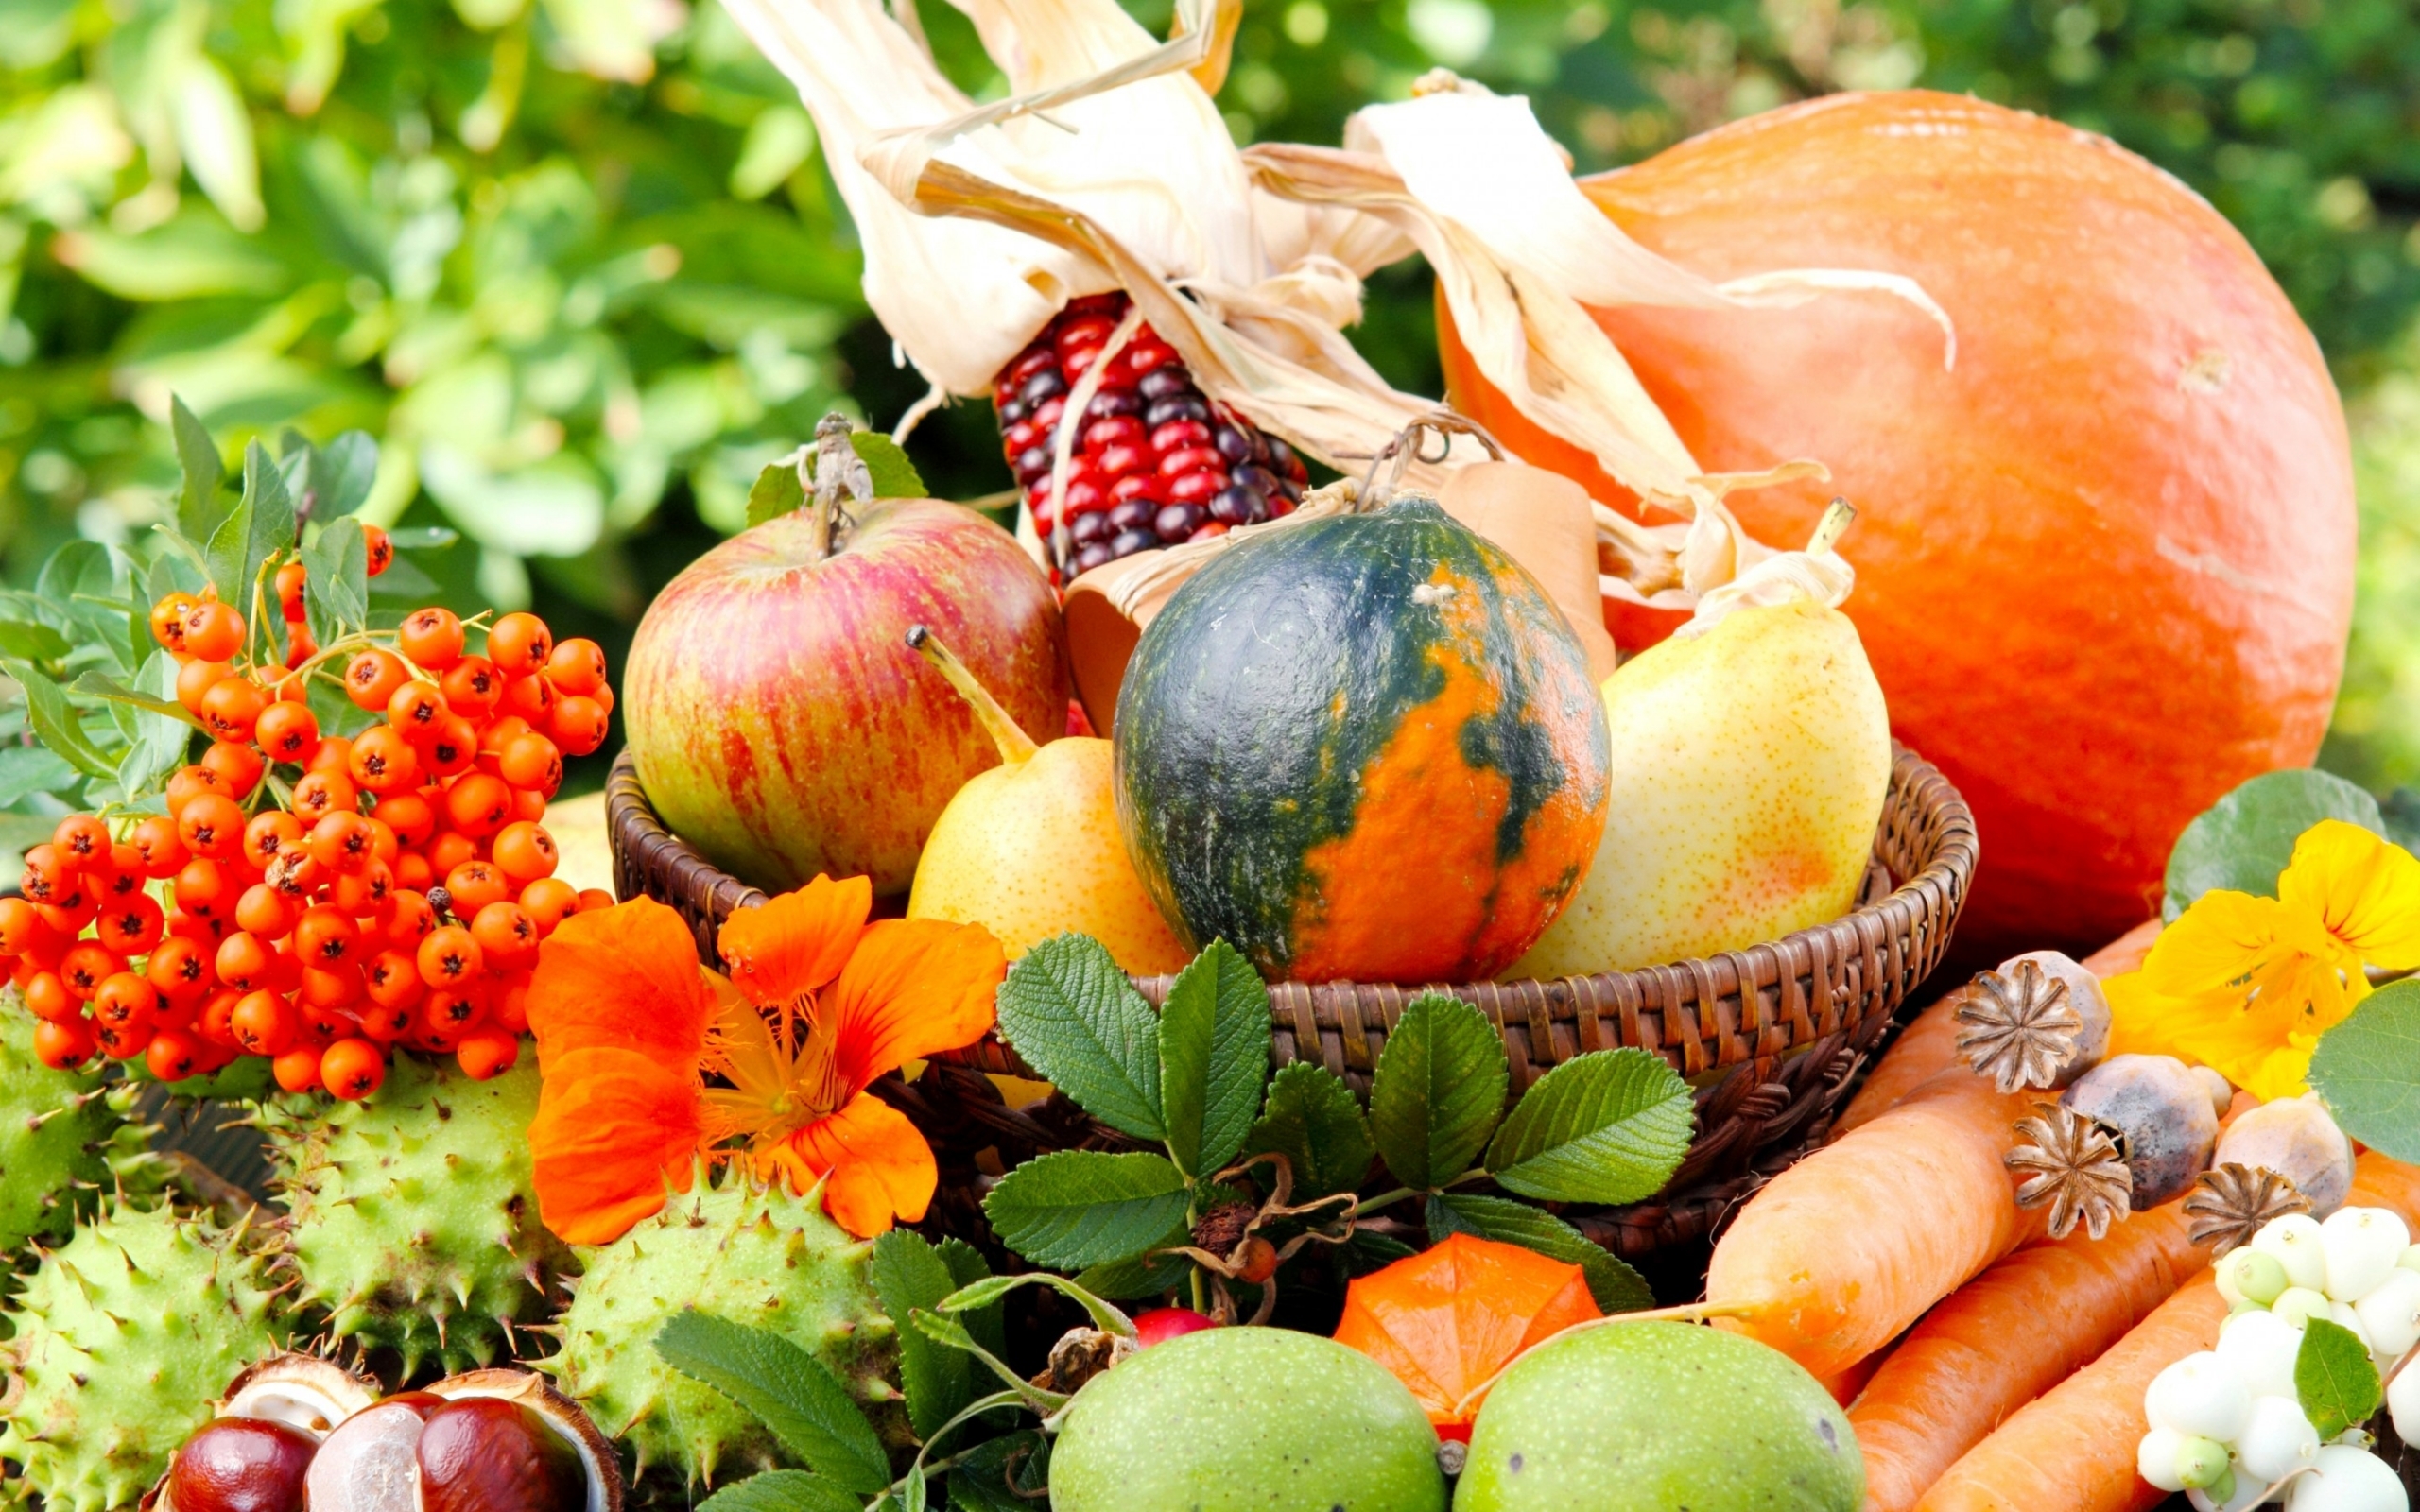 Free download wallpaper Food, Fruits, Vegetables on your PC desktop